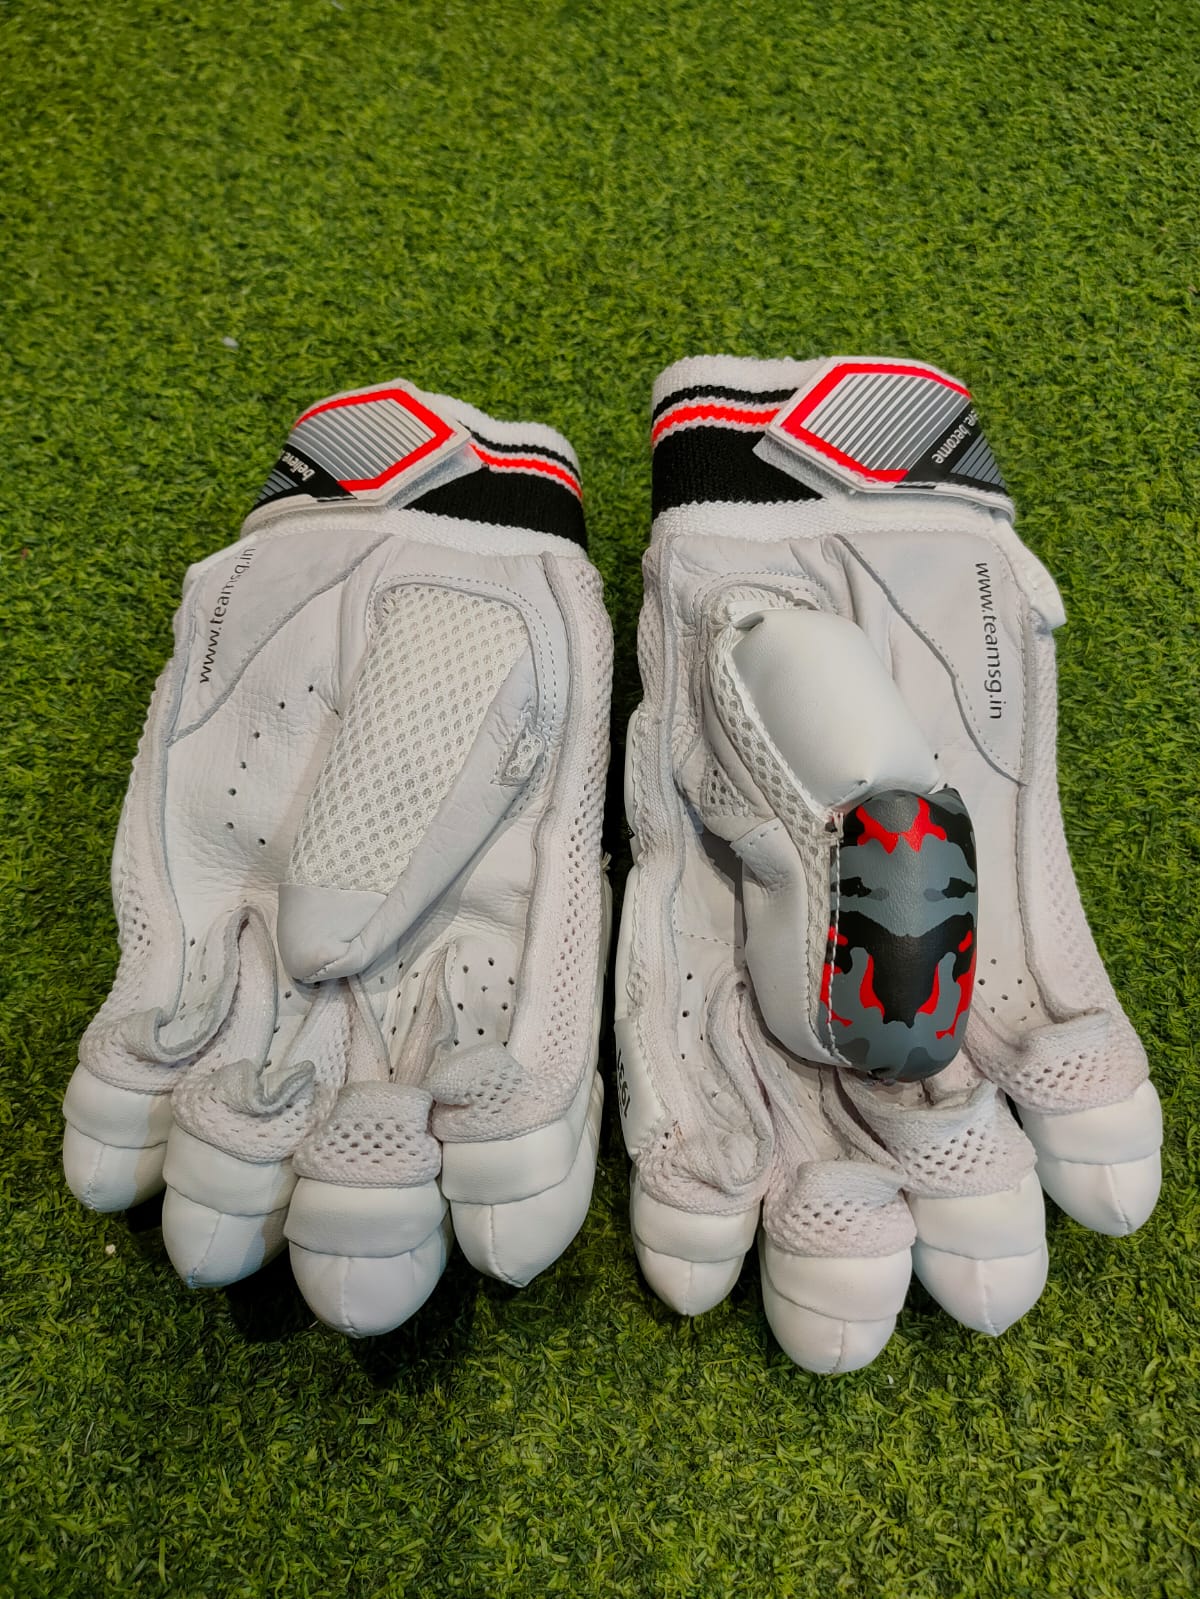 Cricket Batting Gloves SG PROSOFT